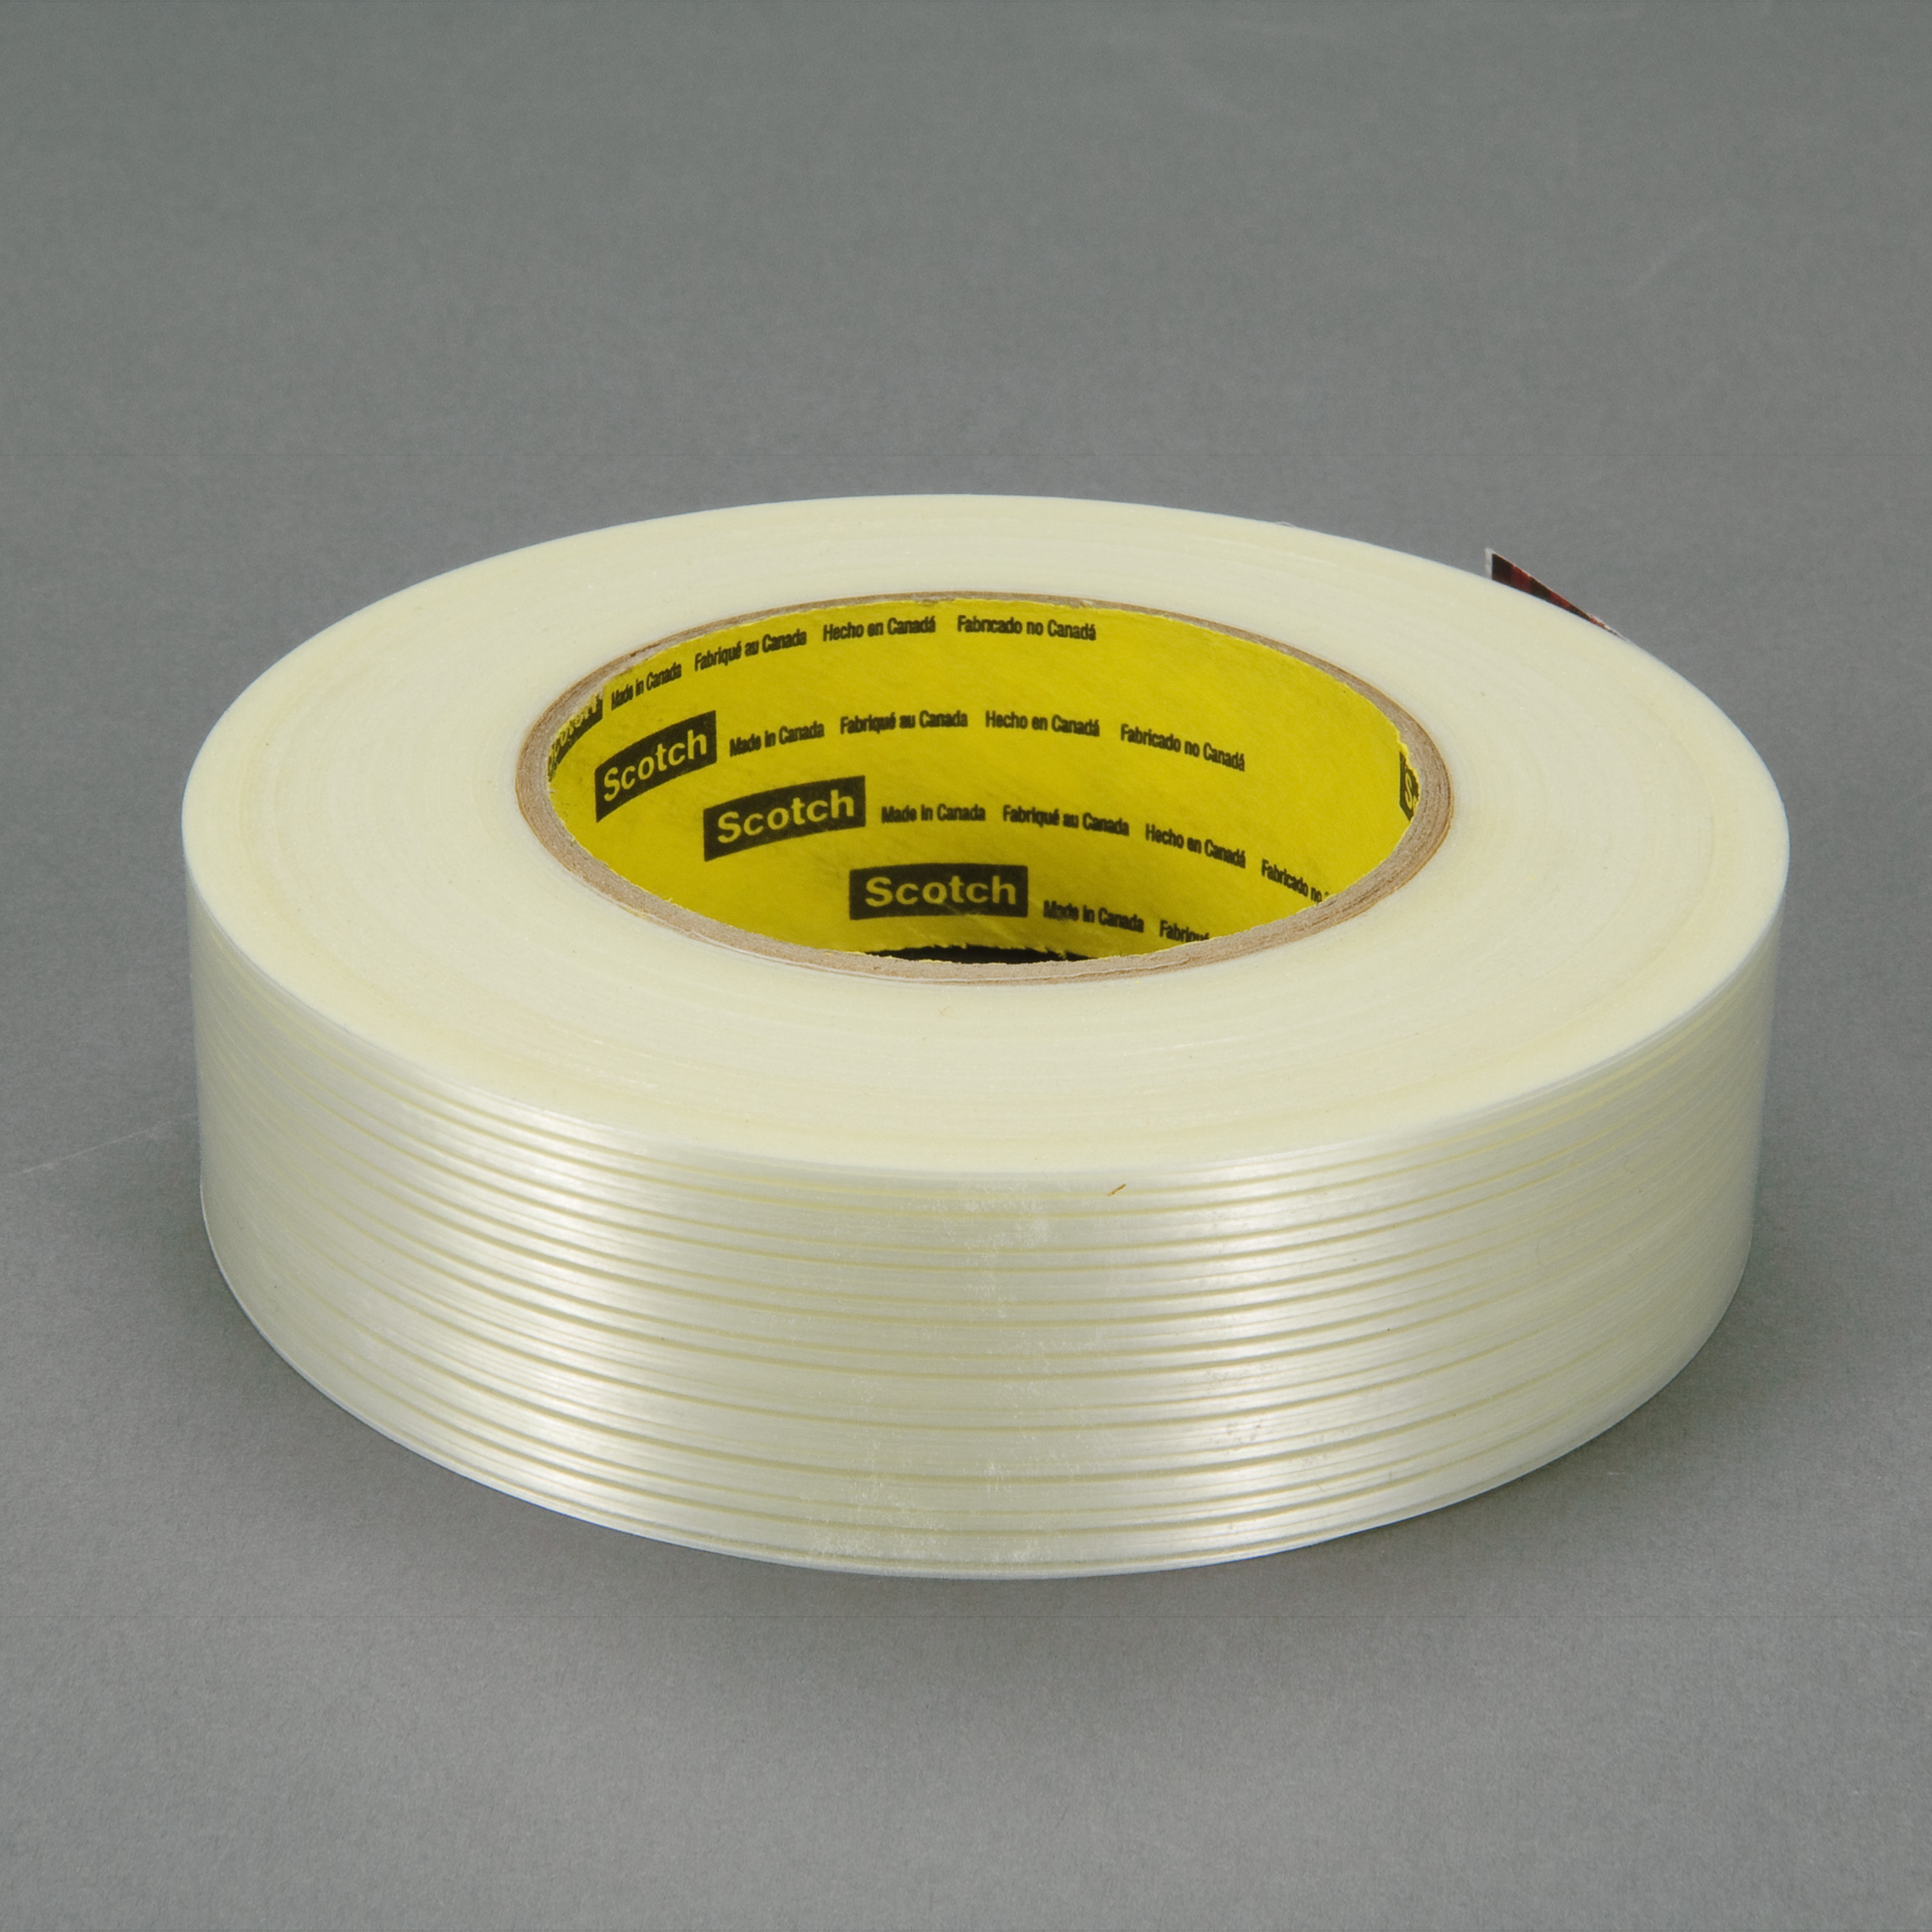 Scotch® Filament Tape 8916V, Clear, 36 mm x 55 m, 6.8 mil, 6.8 mil, 24
rolls per case